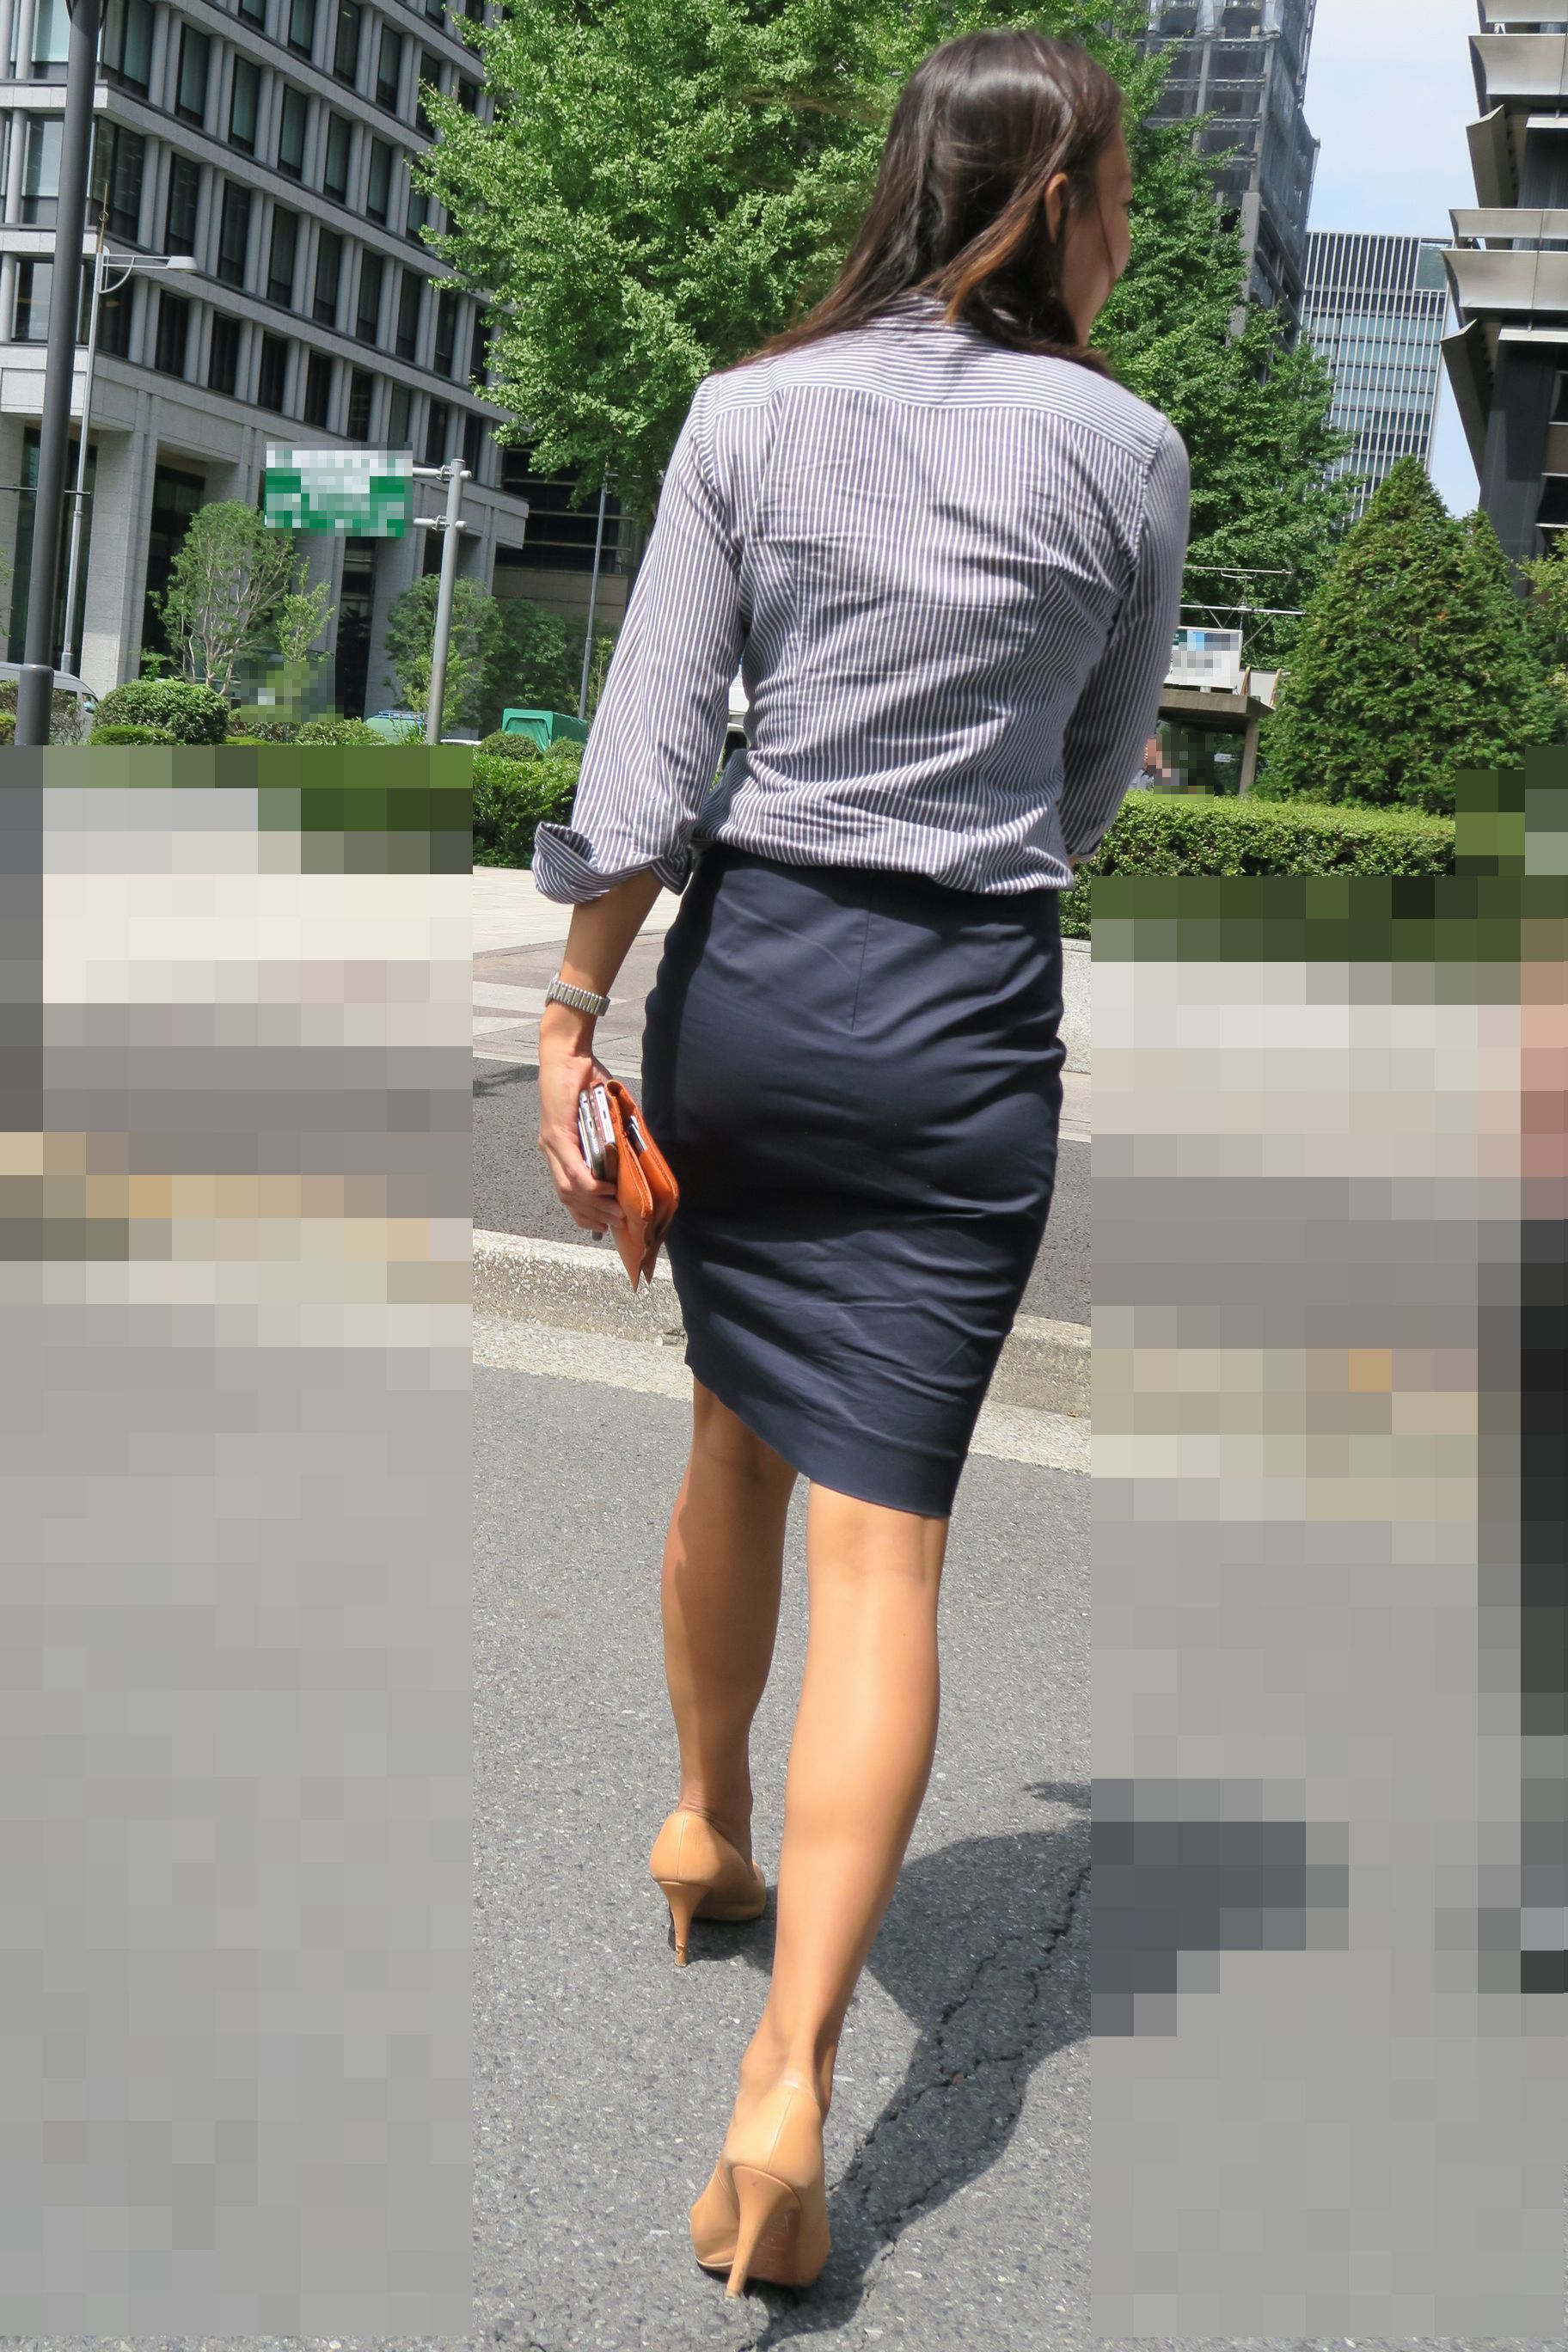 OLさんや就活女子のタイトスカートお尻を街撮りした素人エロ画像-187